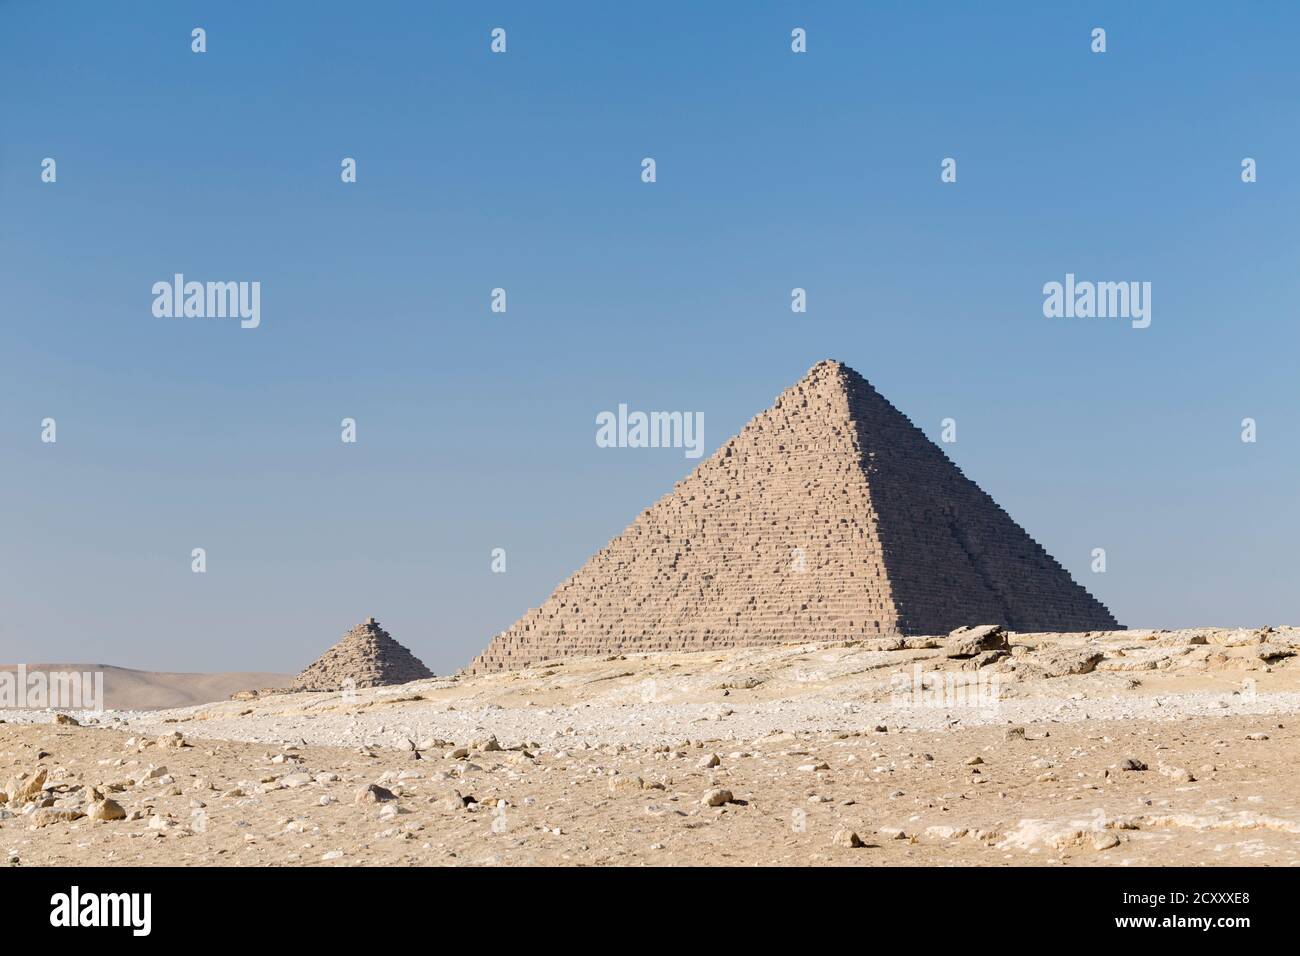 La pyramide de Menkaure à côté des pyramides de la reine, Gizeh, Égypte Banque D'Images